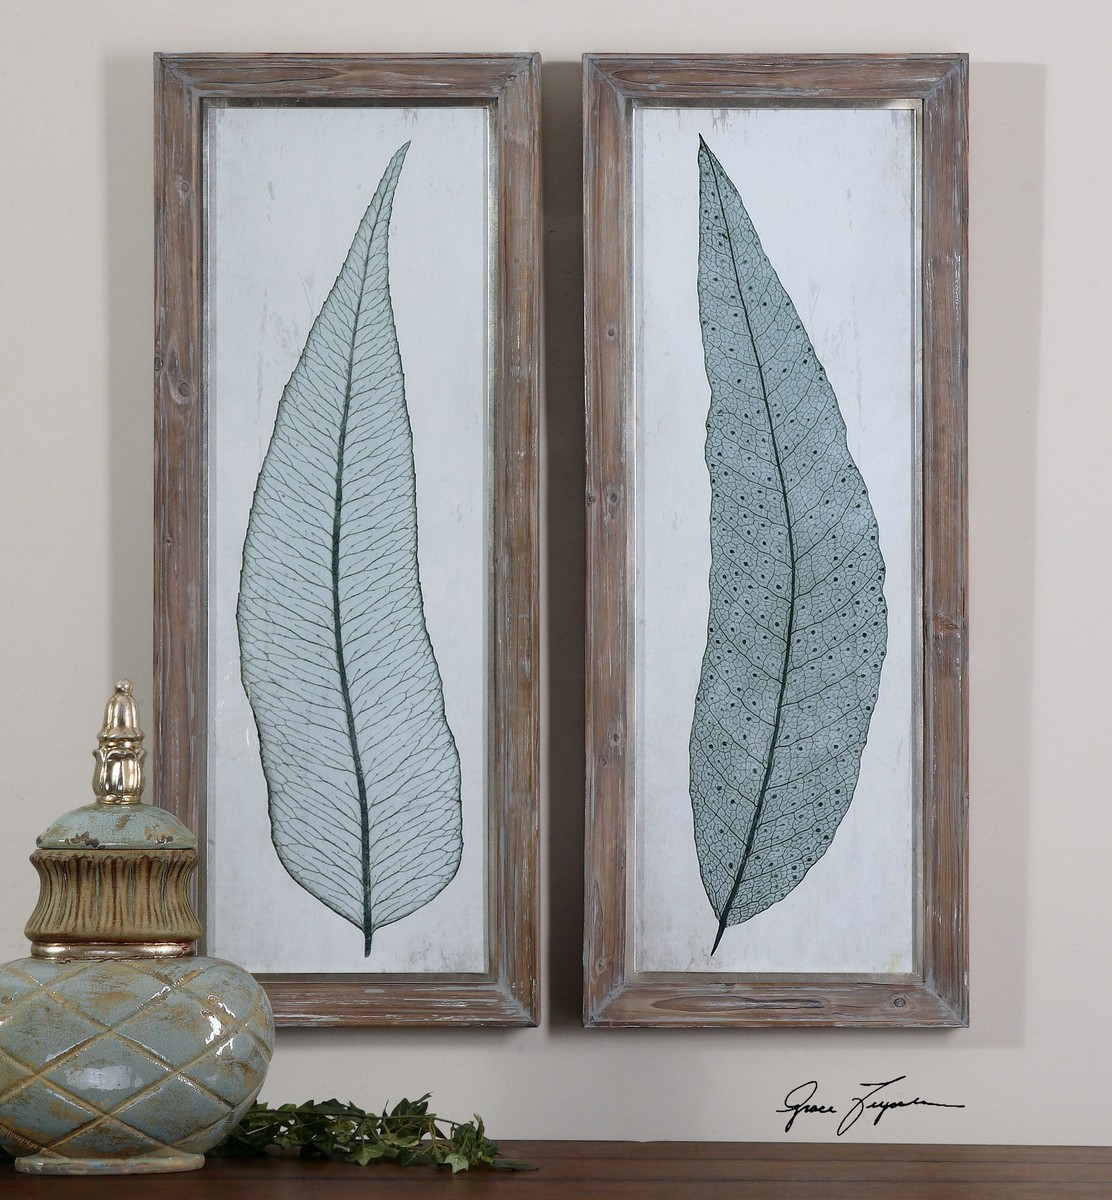 Uttermost Tall Leaves Framed Art - Set of 2